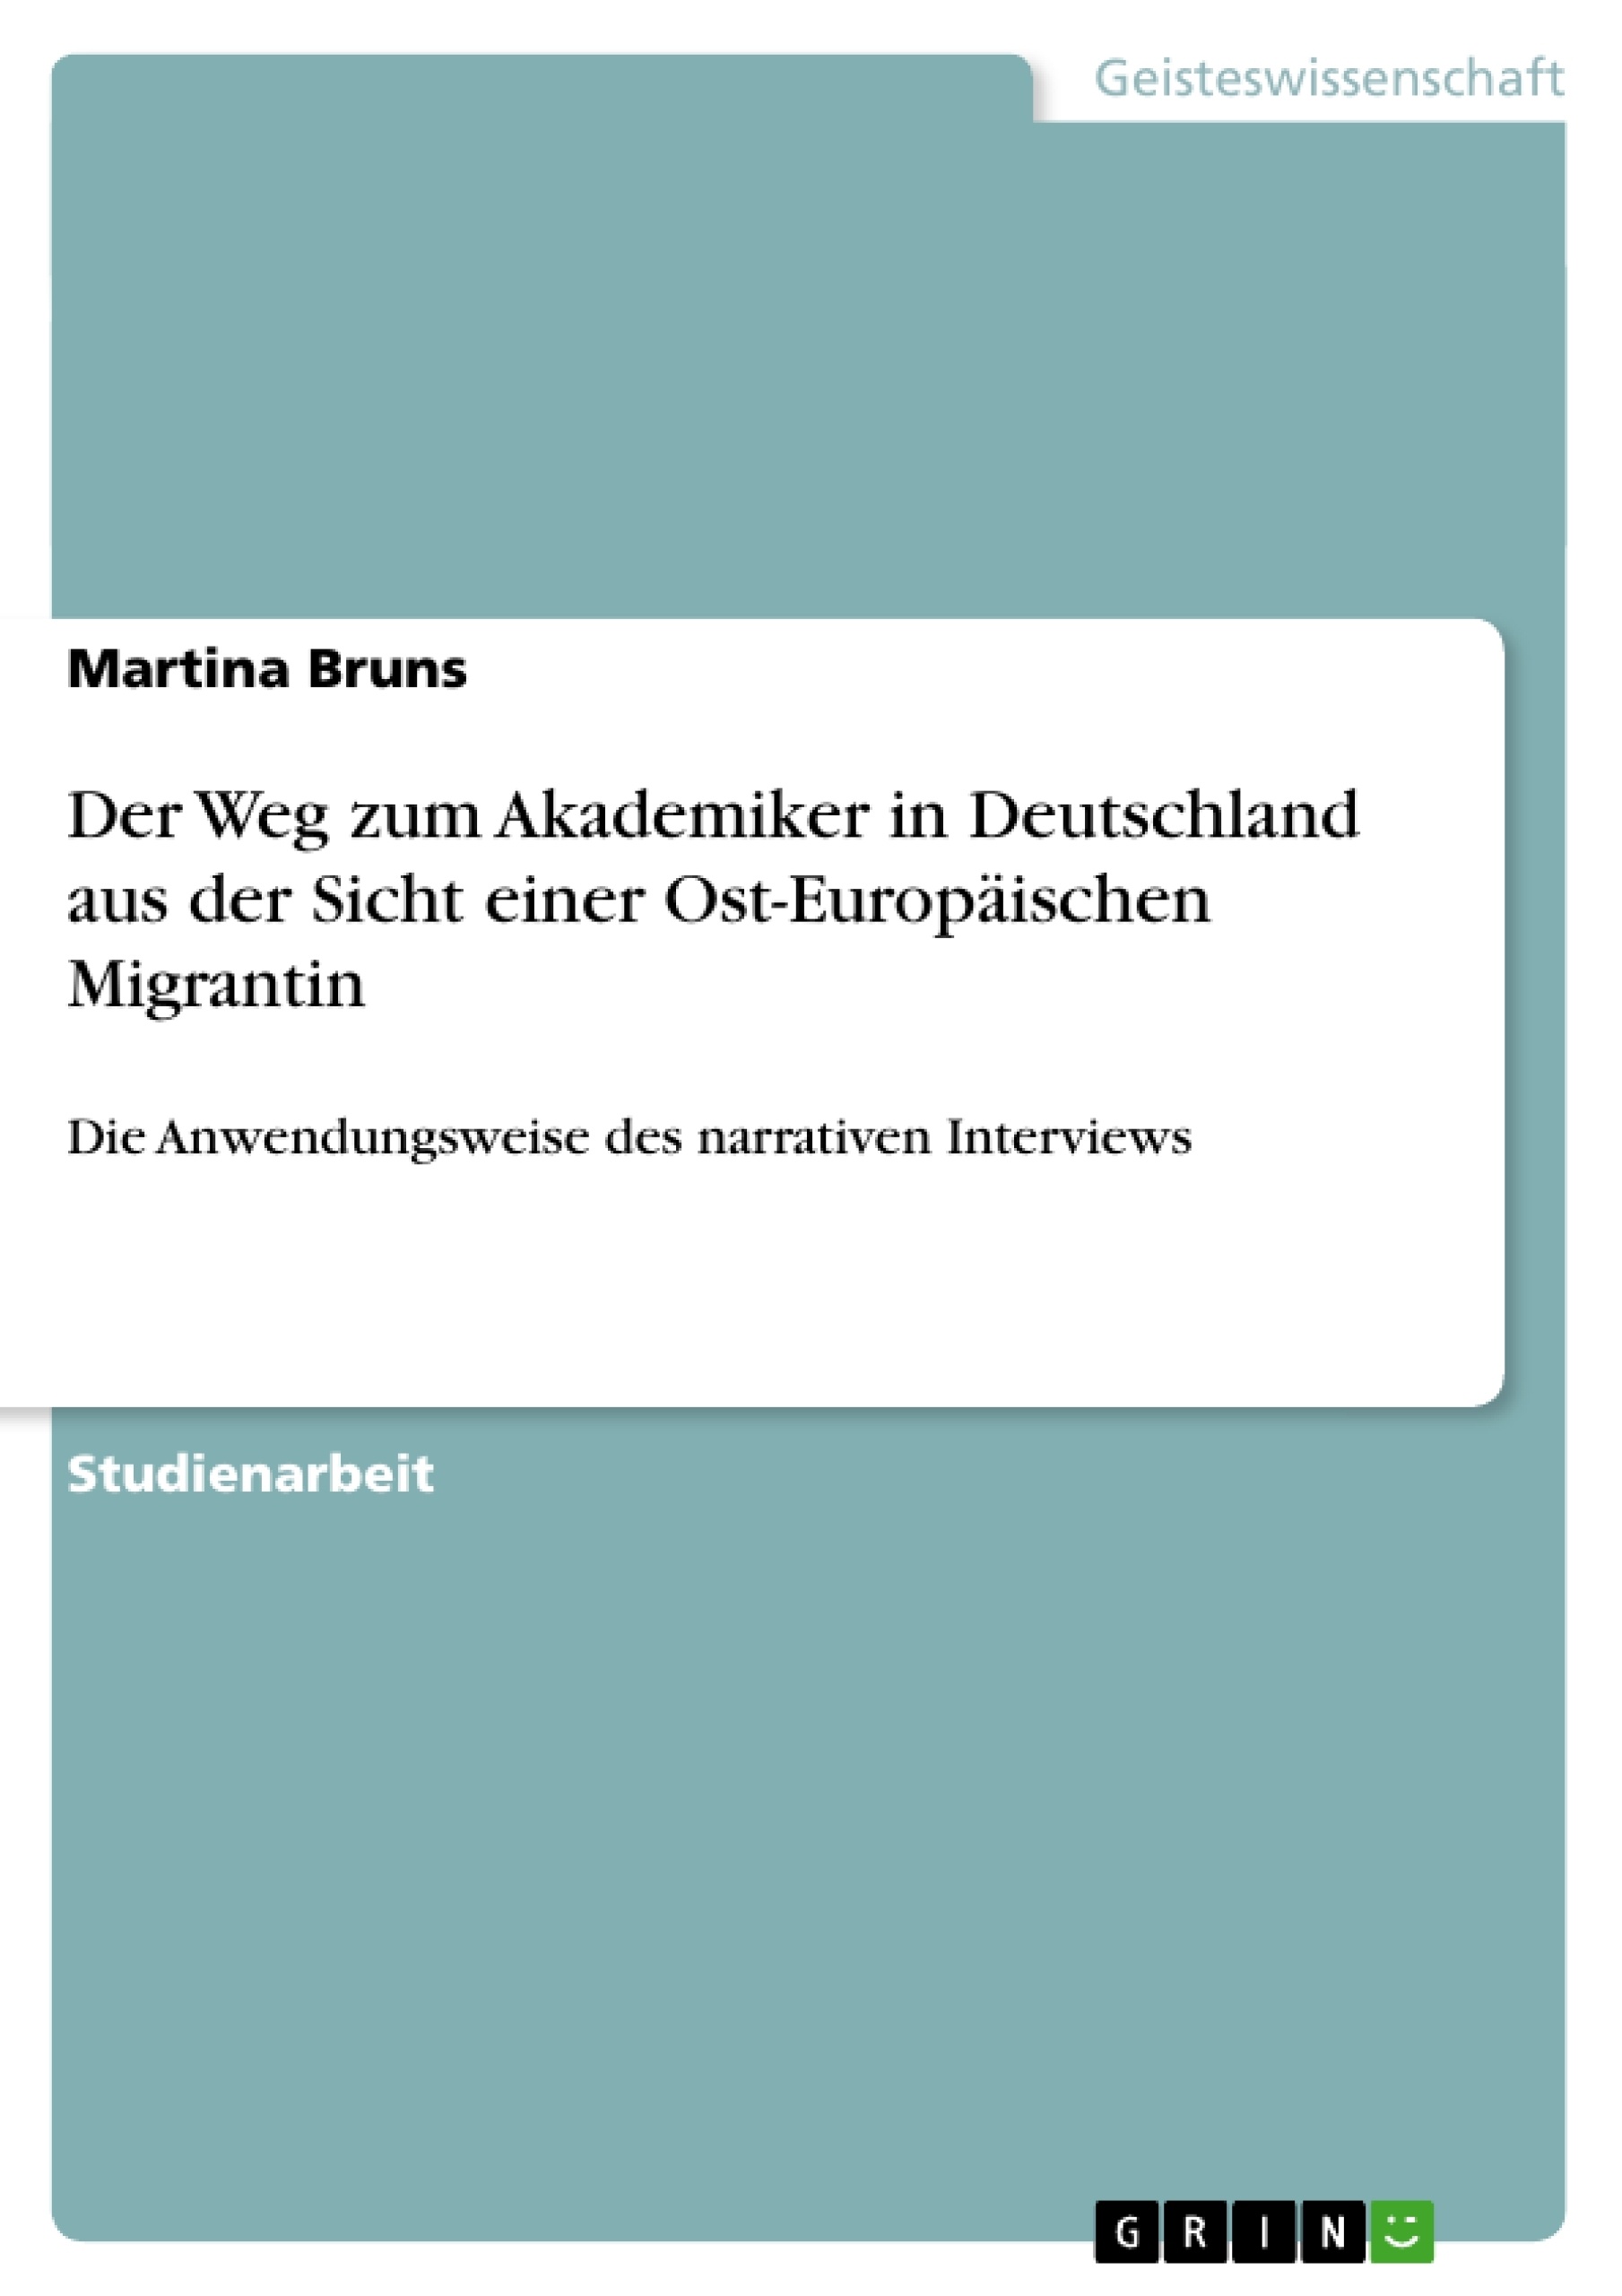 Título: Der Weg zum Akademiker in Deutschland aus der Sicht einer Ost-Europäischen Migrantin